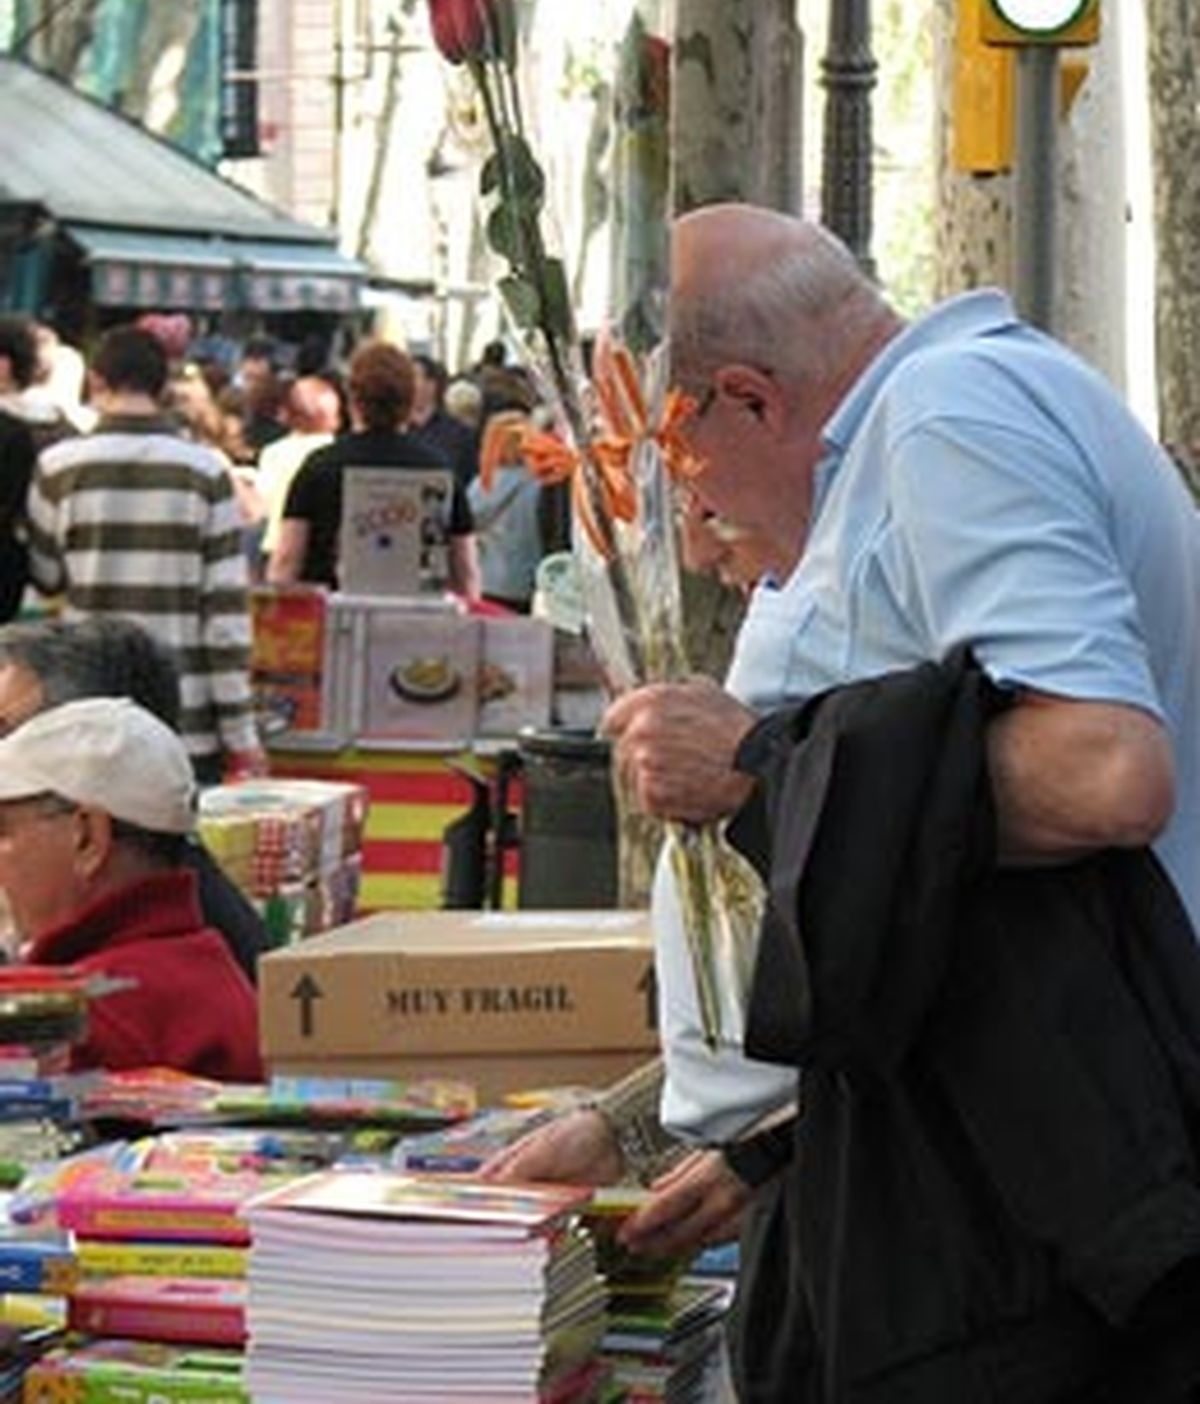 Los catalanes celebran Sant Jordi regalando un libro y una flor.